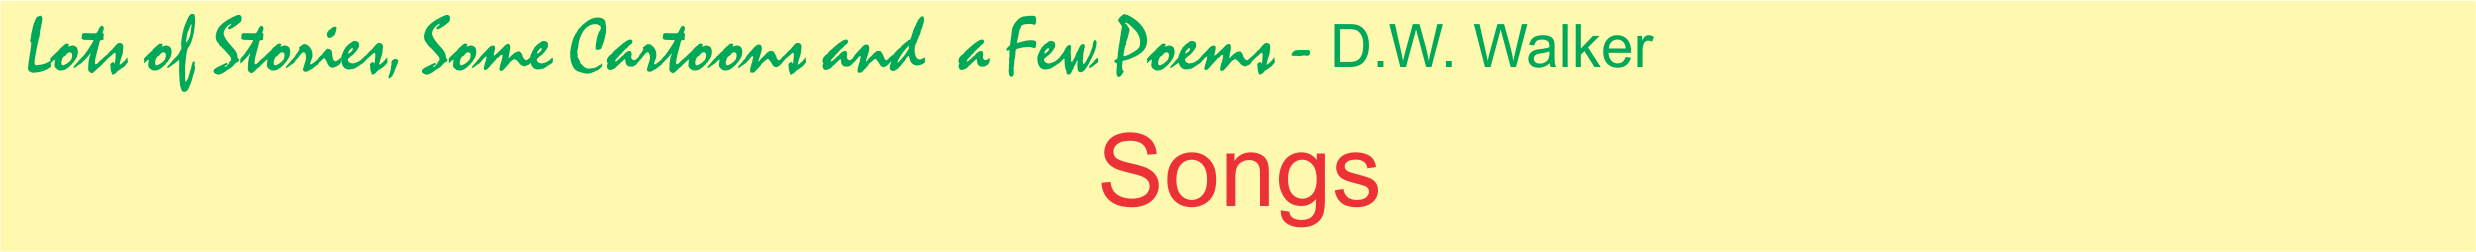 Songs by D.W. Walker